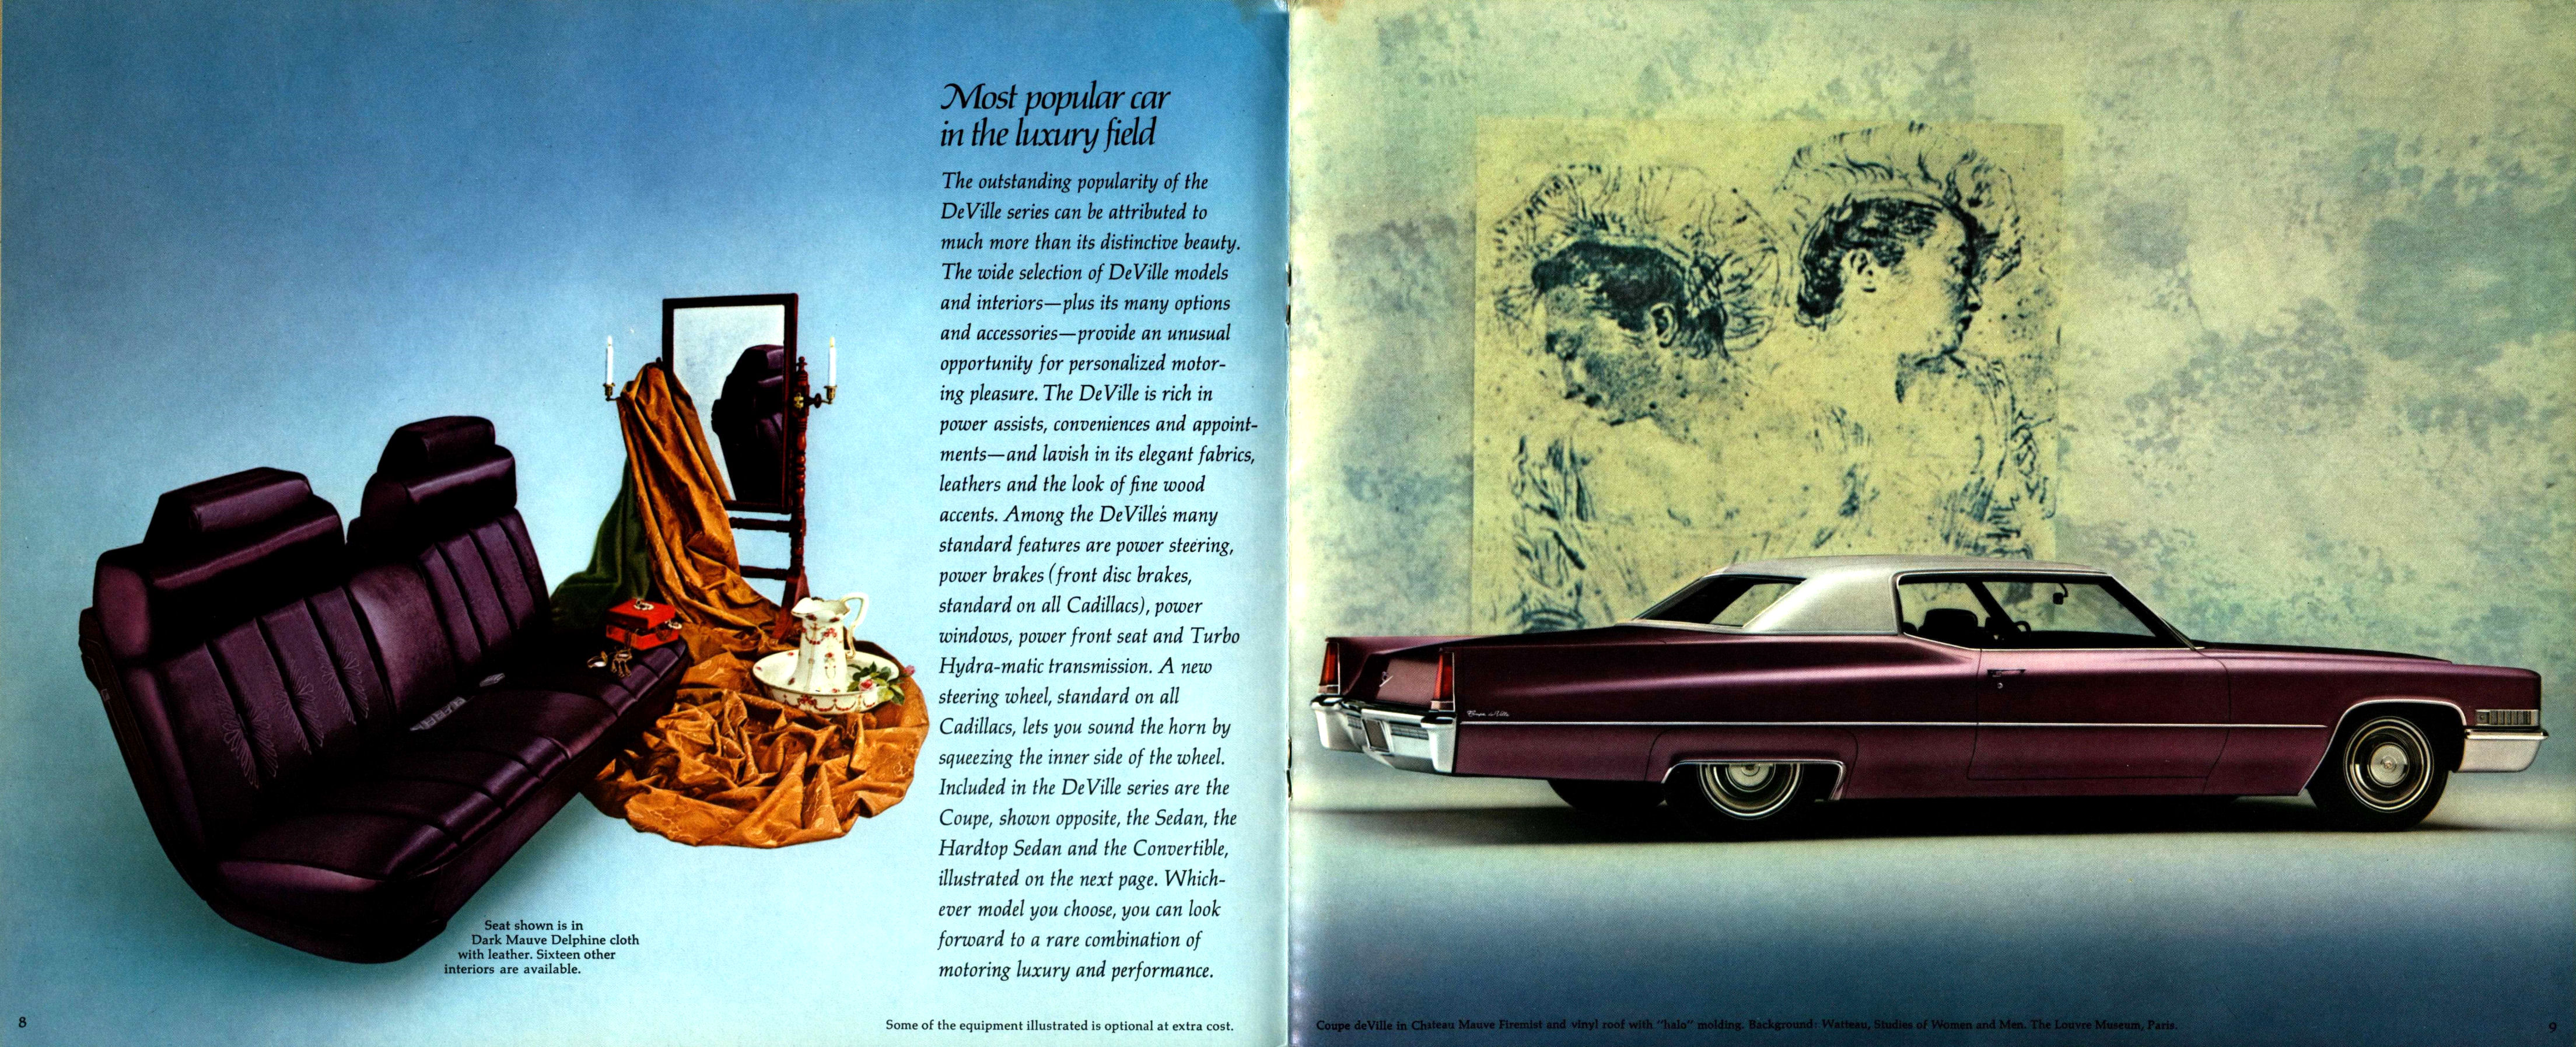 1969_Cadillac_Cdn-08-09